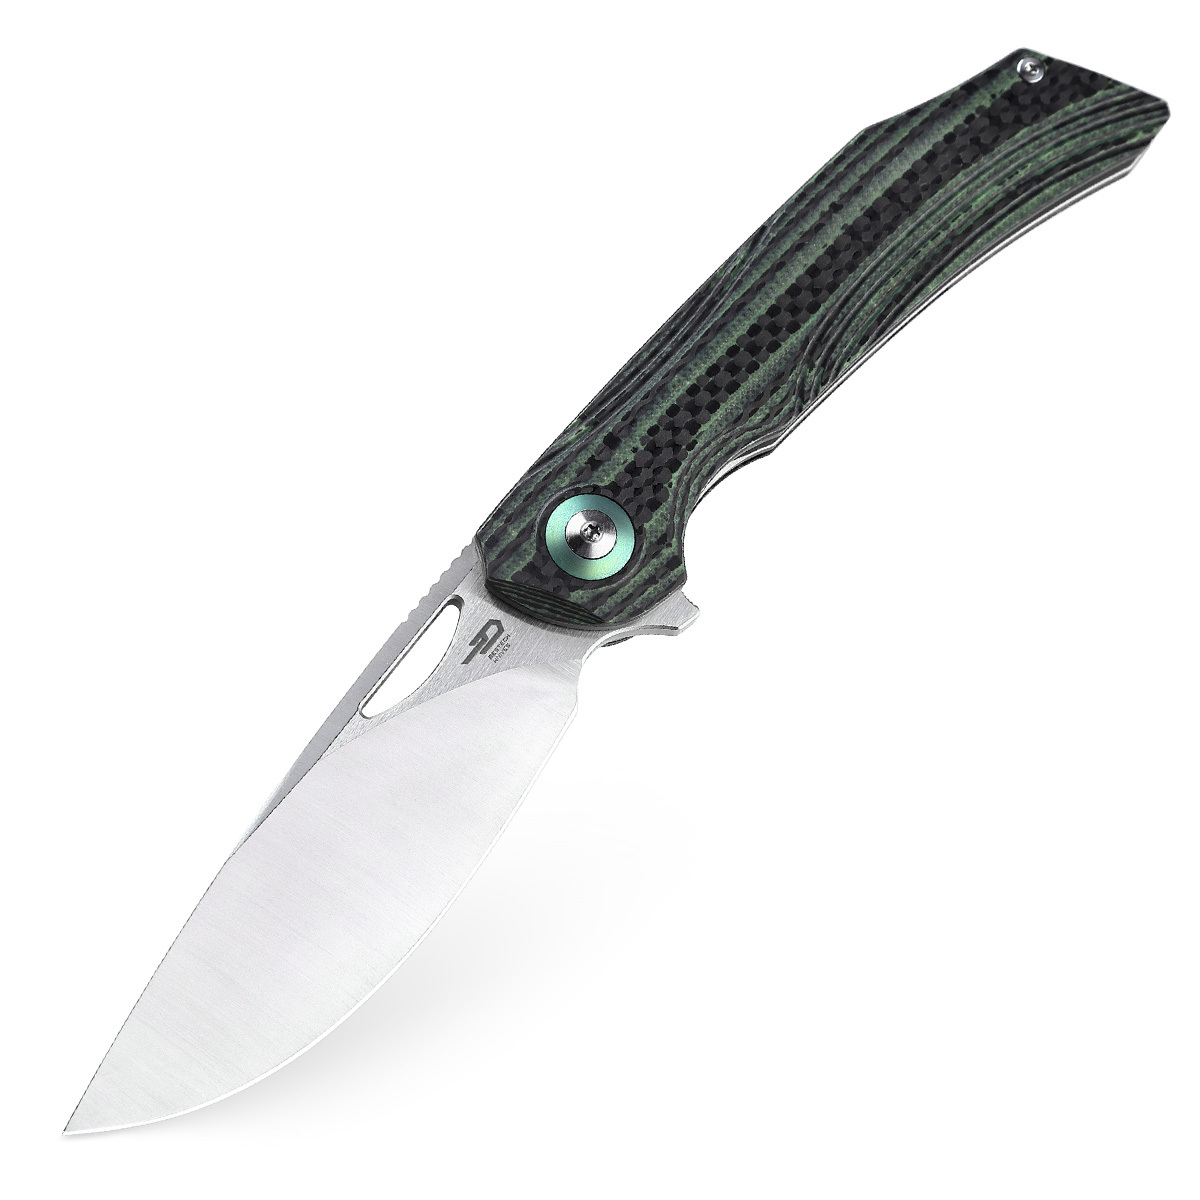 Складной нож Bestech Falko, сталь 154CM, рукоять G10/Carbon fiber, зеленый - фото 1